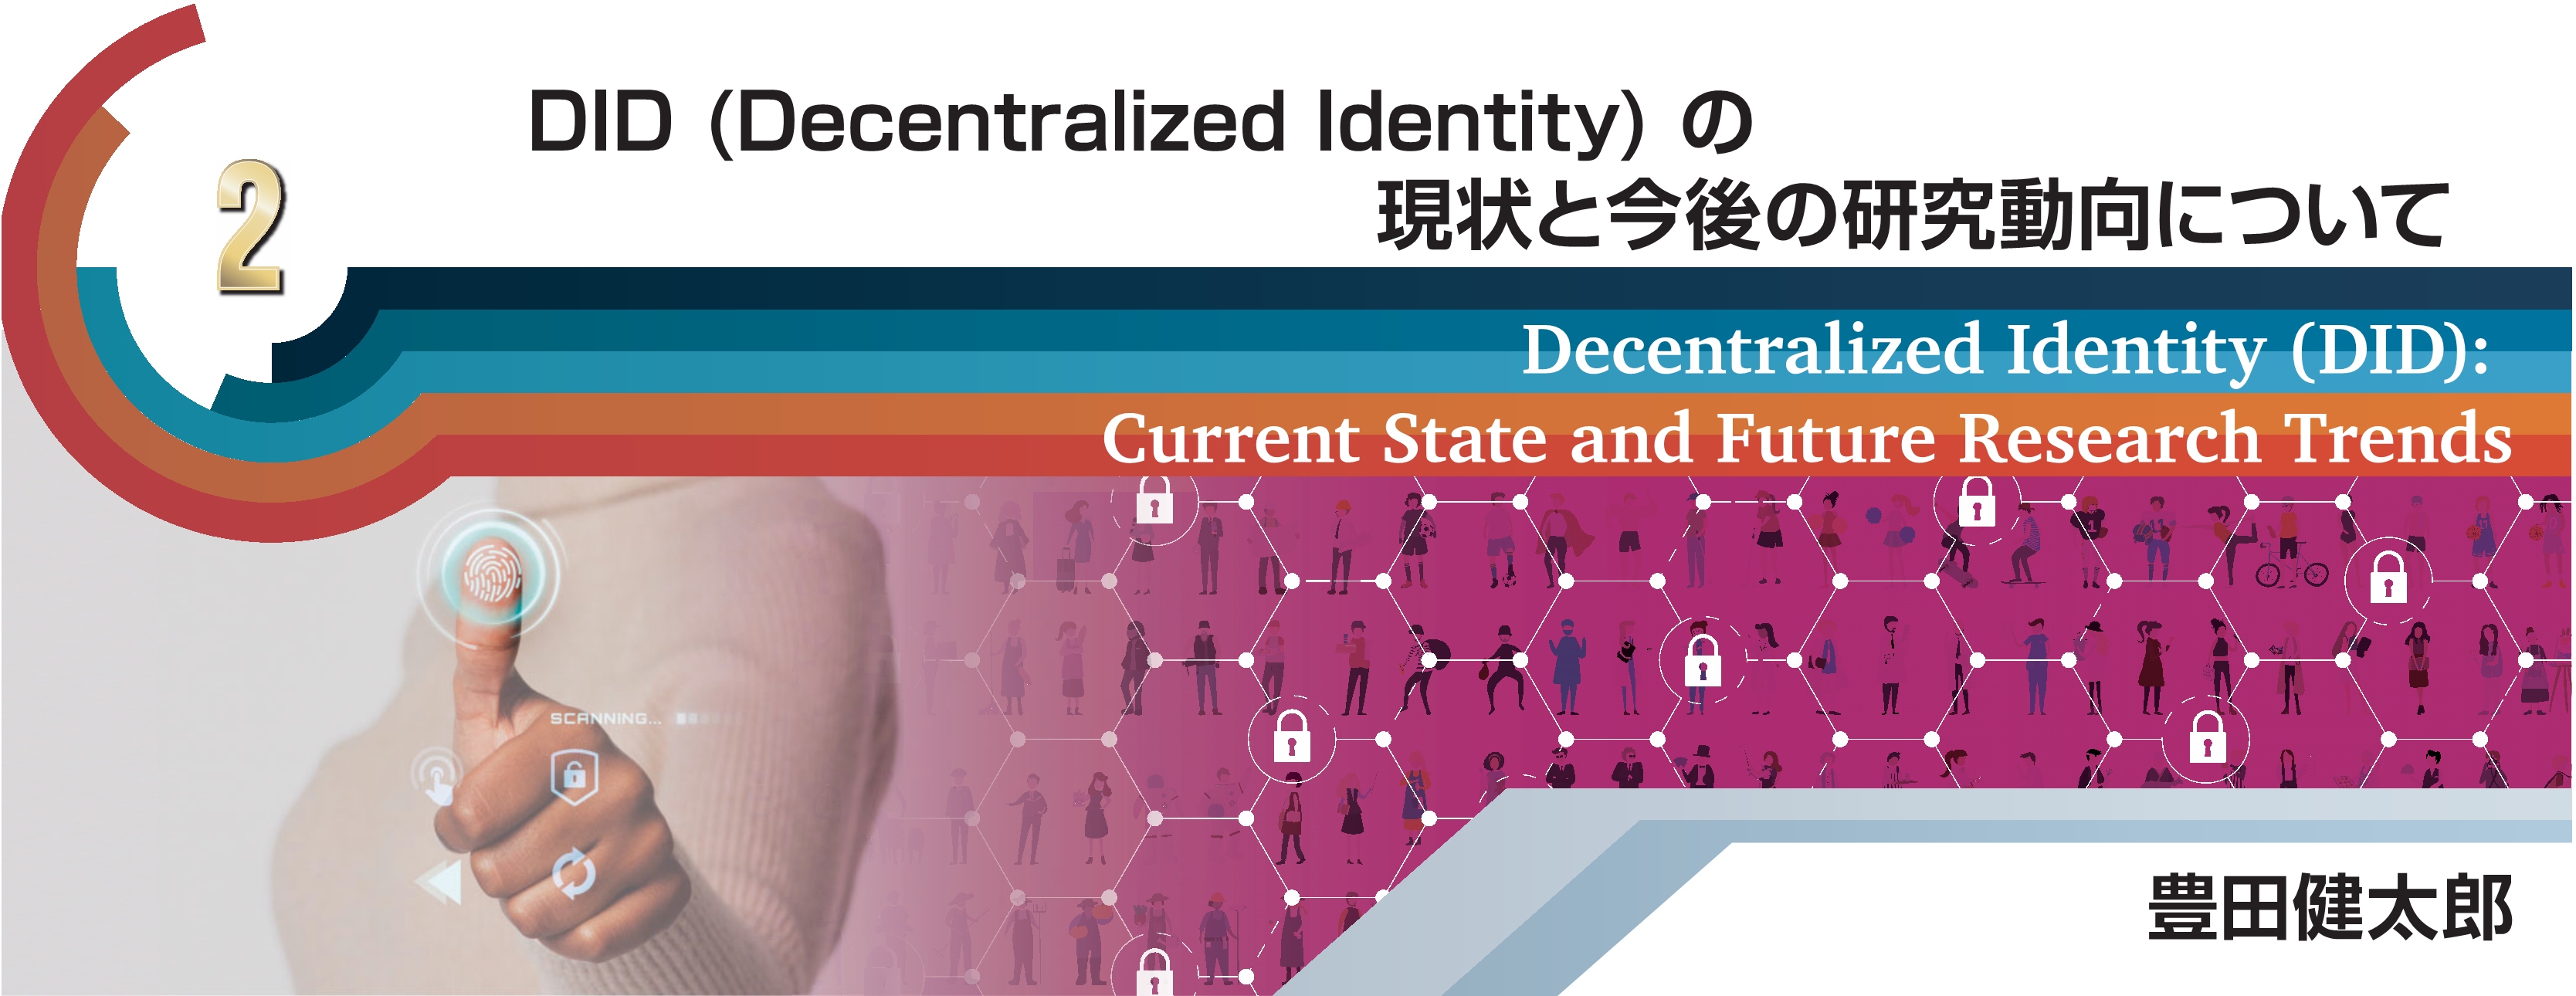 特別小特集 2 DID（Decentralized Identity）の現状と今後の研究動向について Decentralized Identity (DID):Current State and Future Research Trends 豊田　健太郎